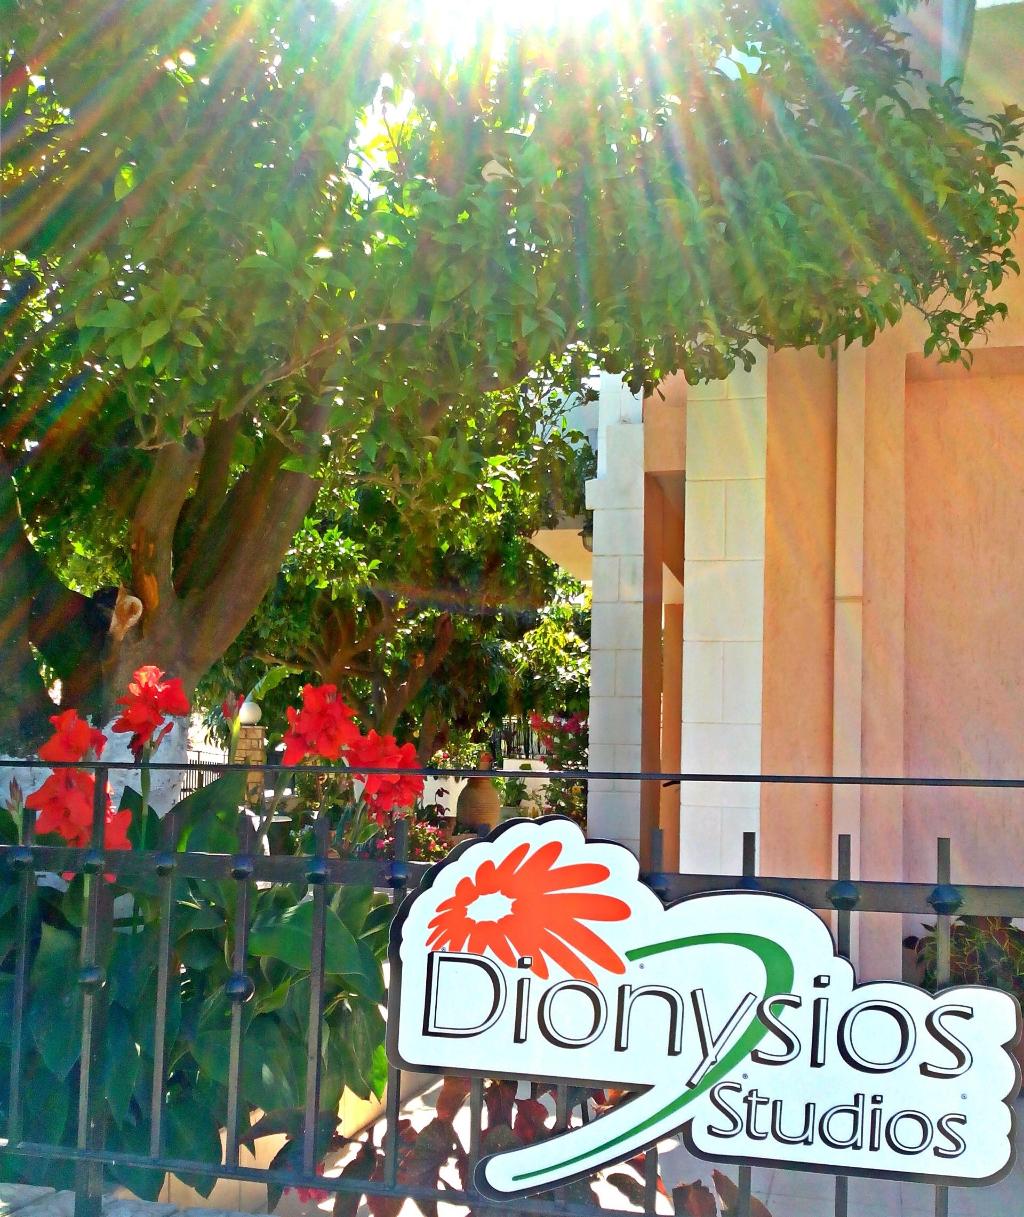 Dionysios Studios & Apartment